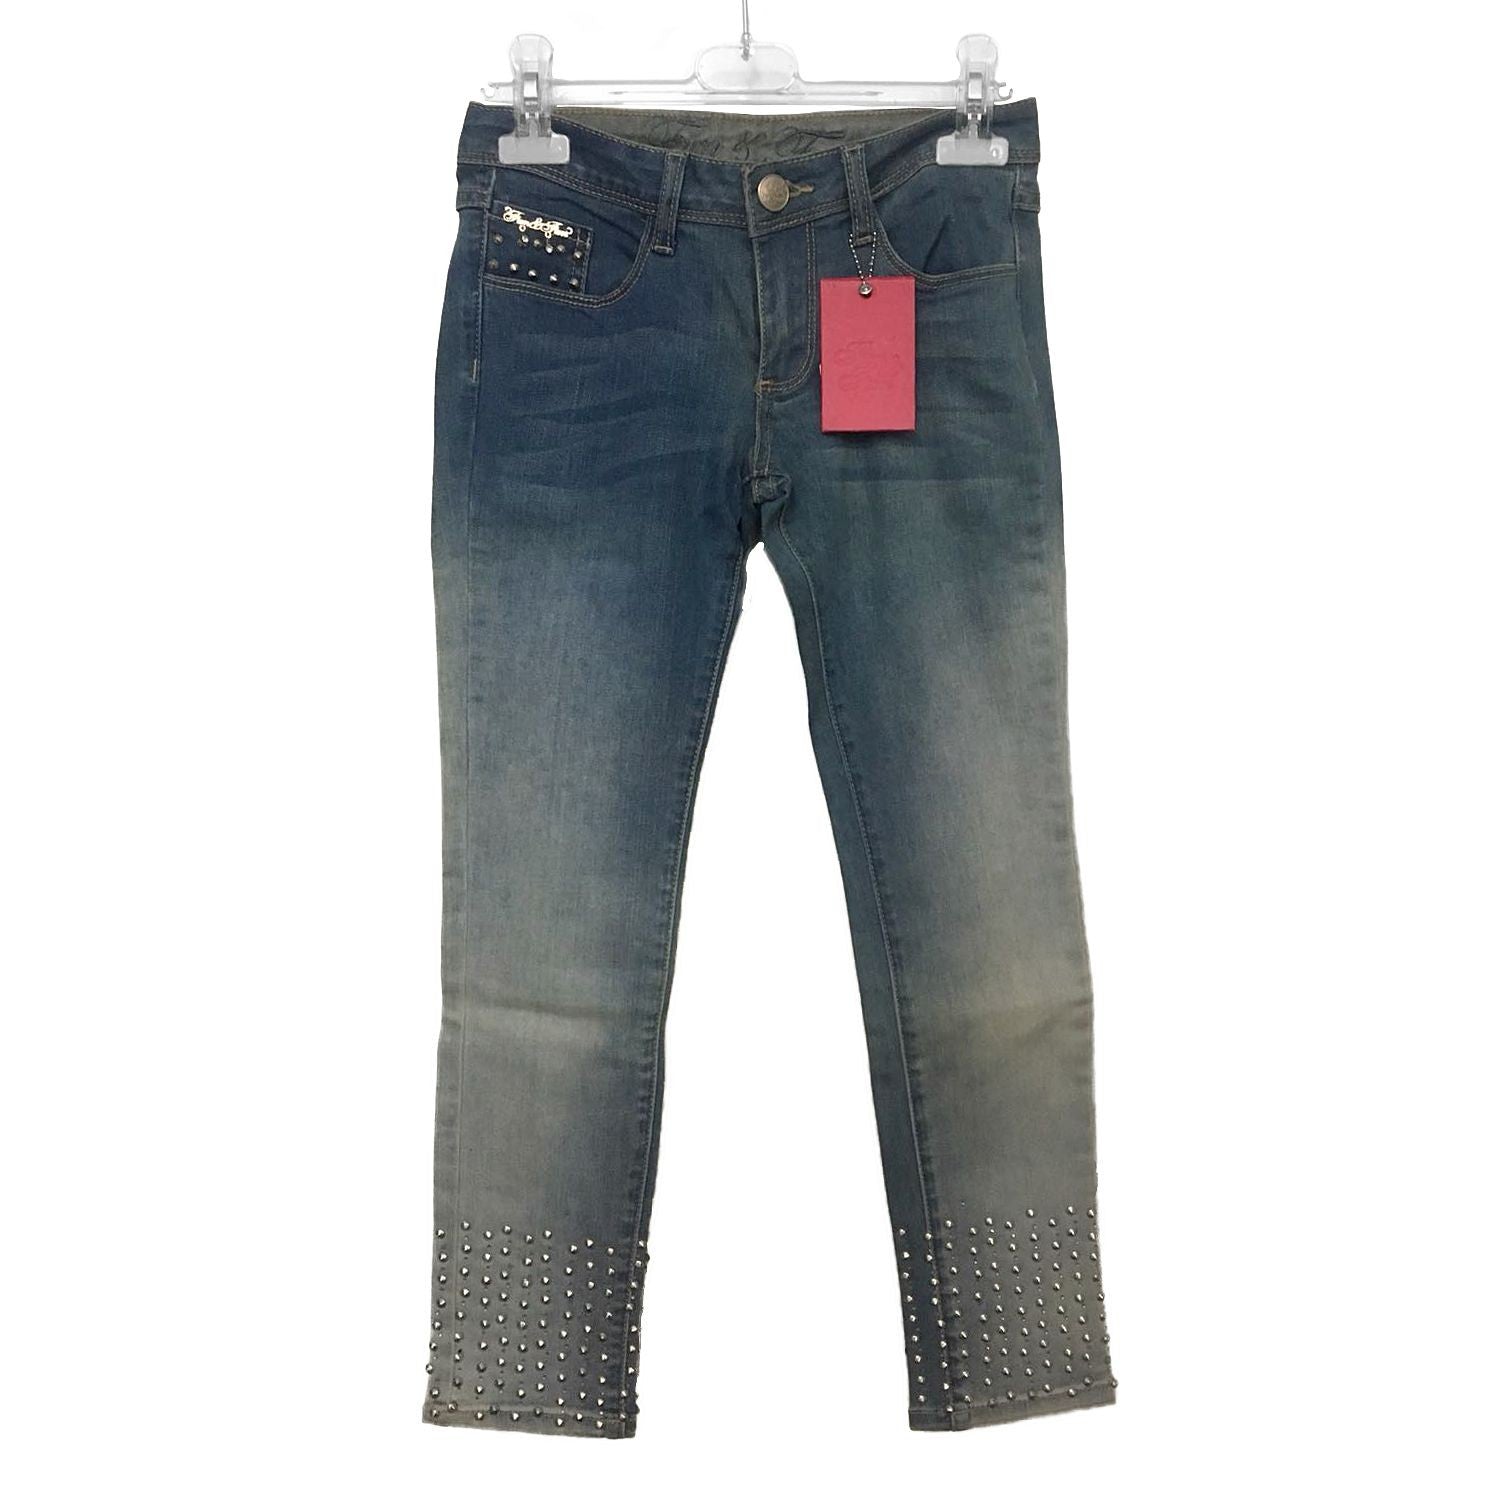 Jeans in Cotone con Borchie Bambina Denim Fun&Fun FUNJPT2187 - FUN&FUN - LuxuryKids